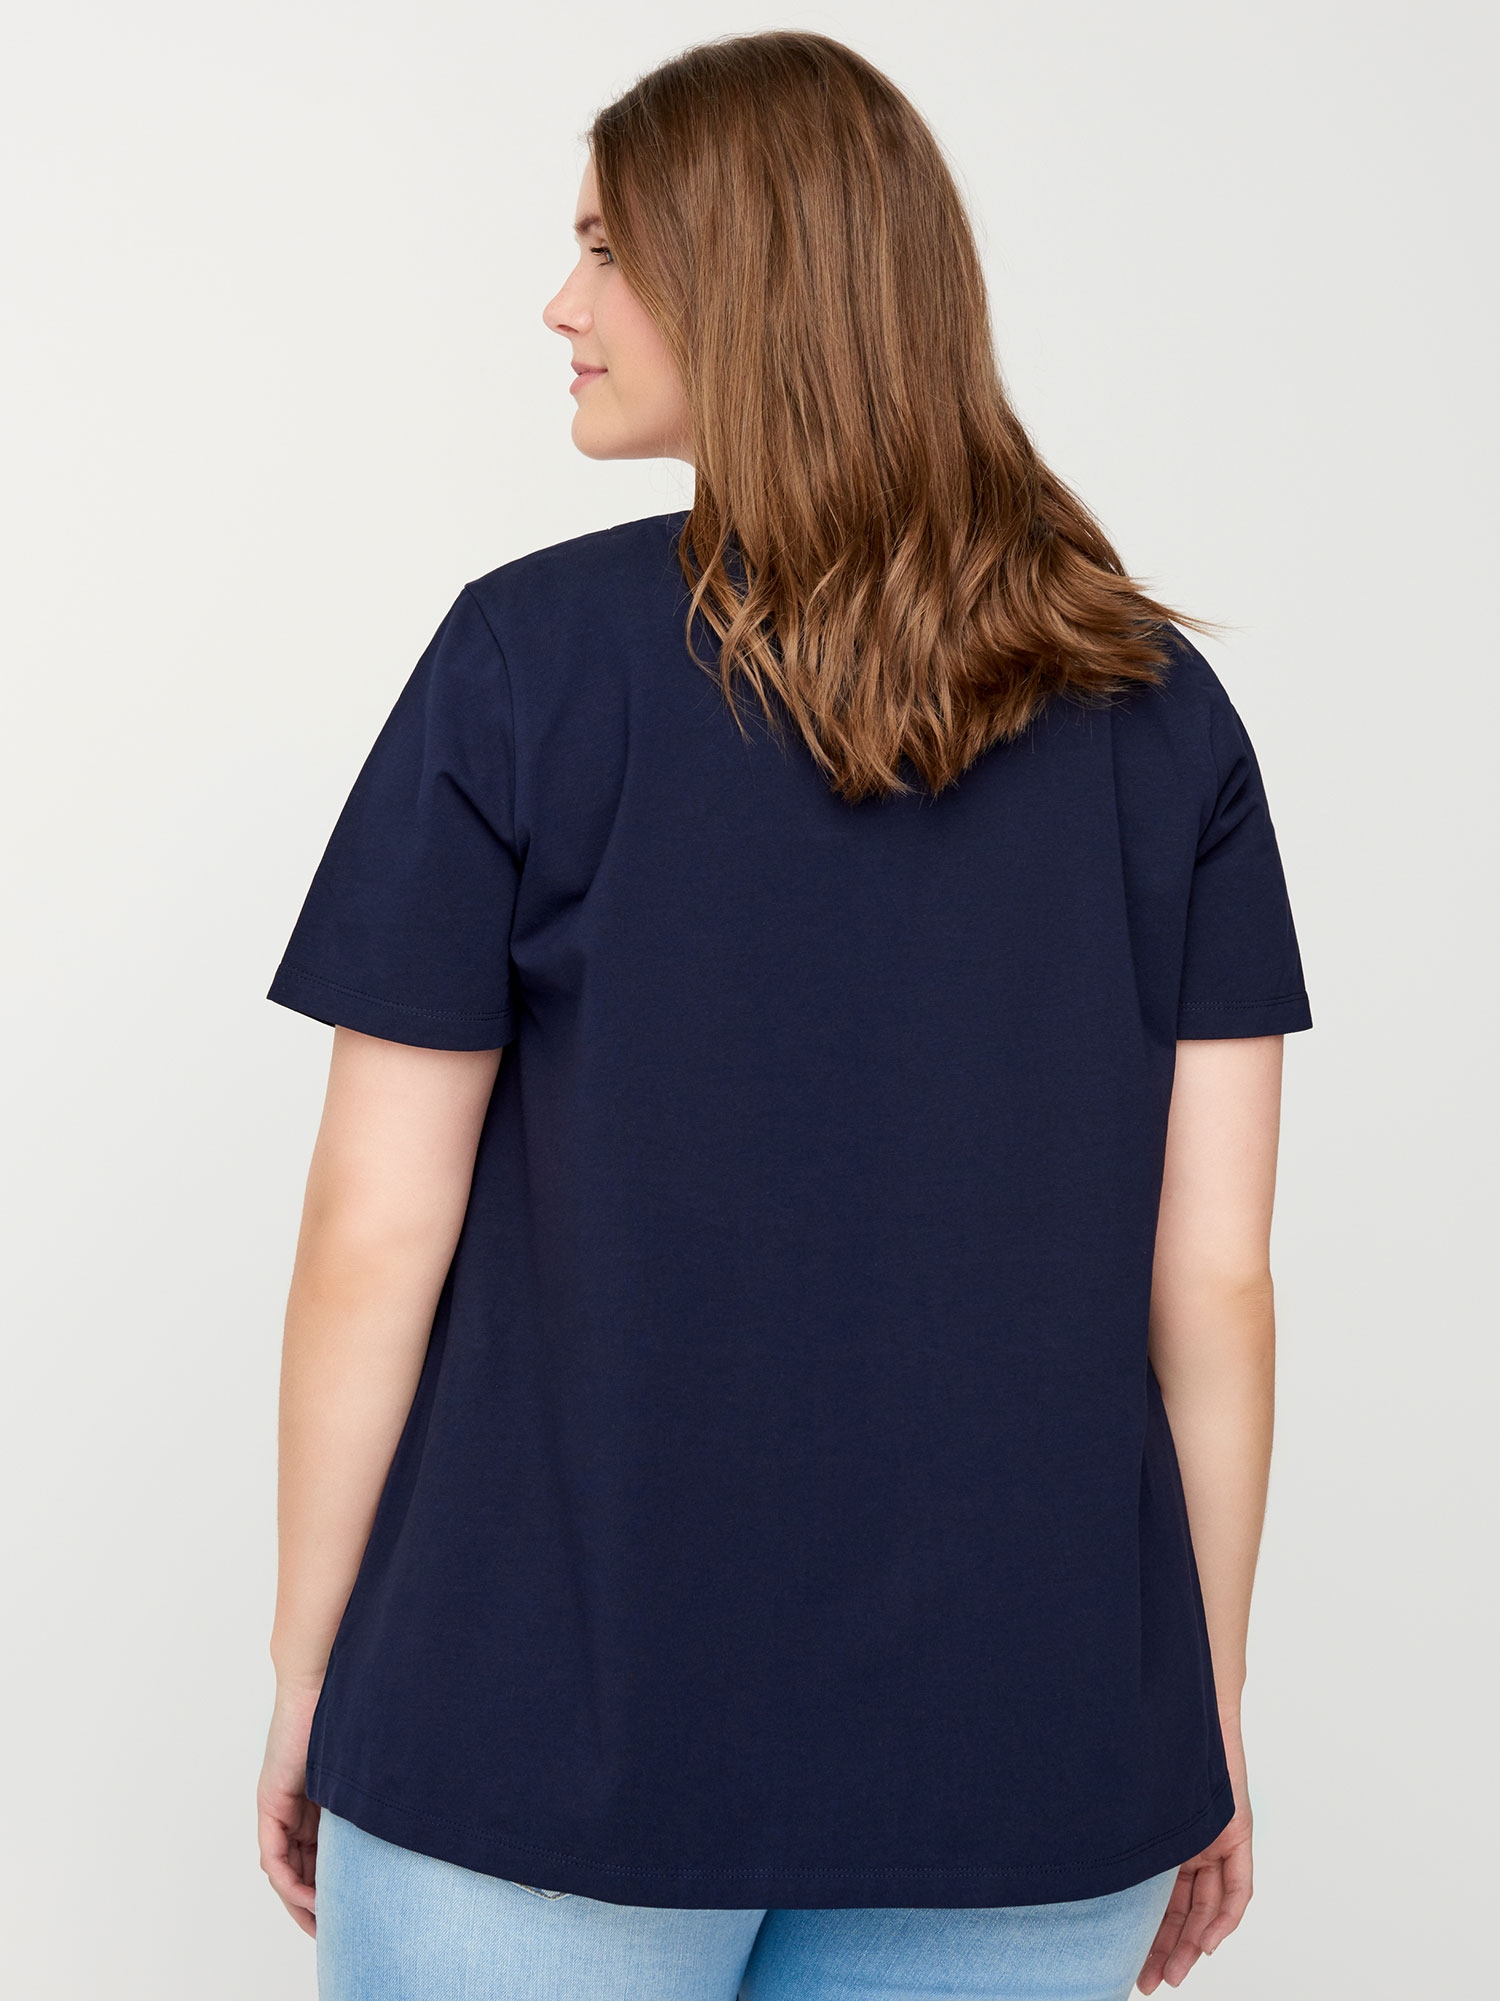 Mørkeblå basis t-shirt i bomuldsjersey fra Zizzi